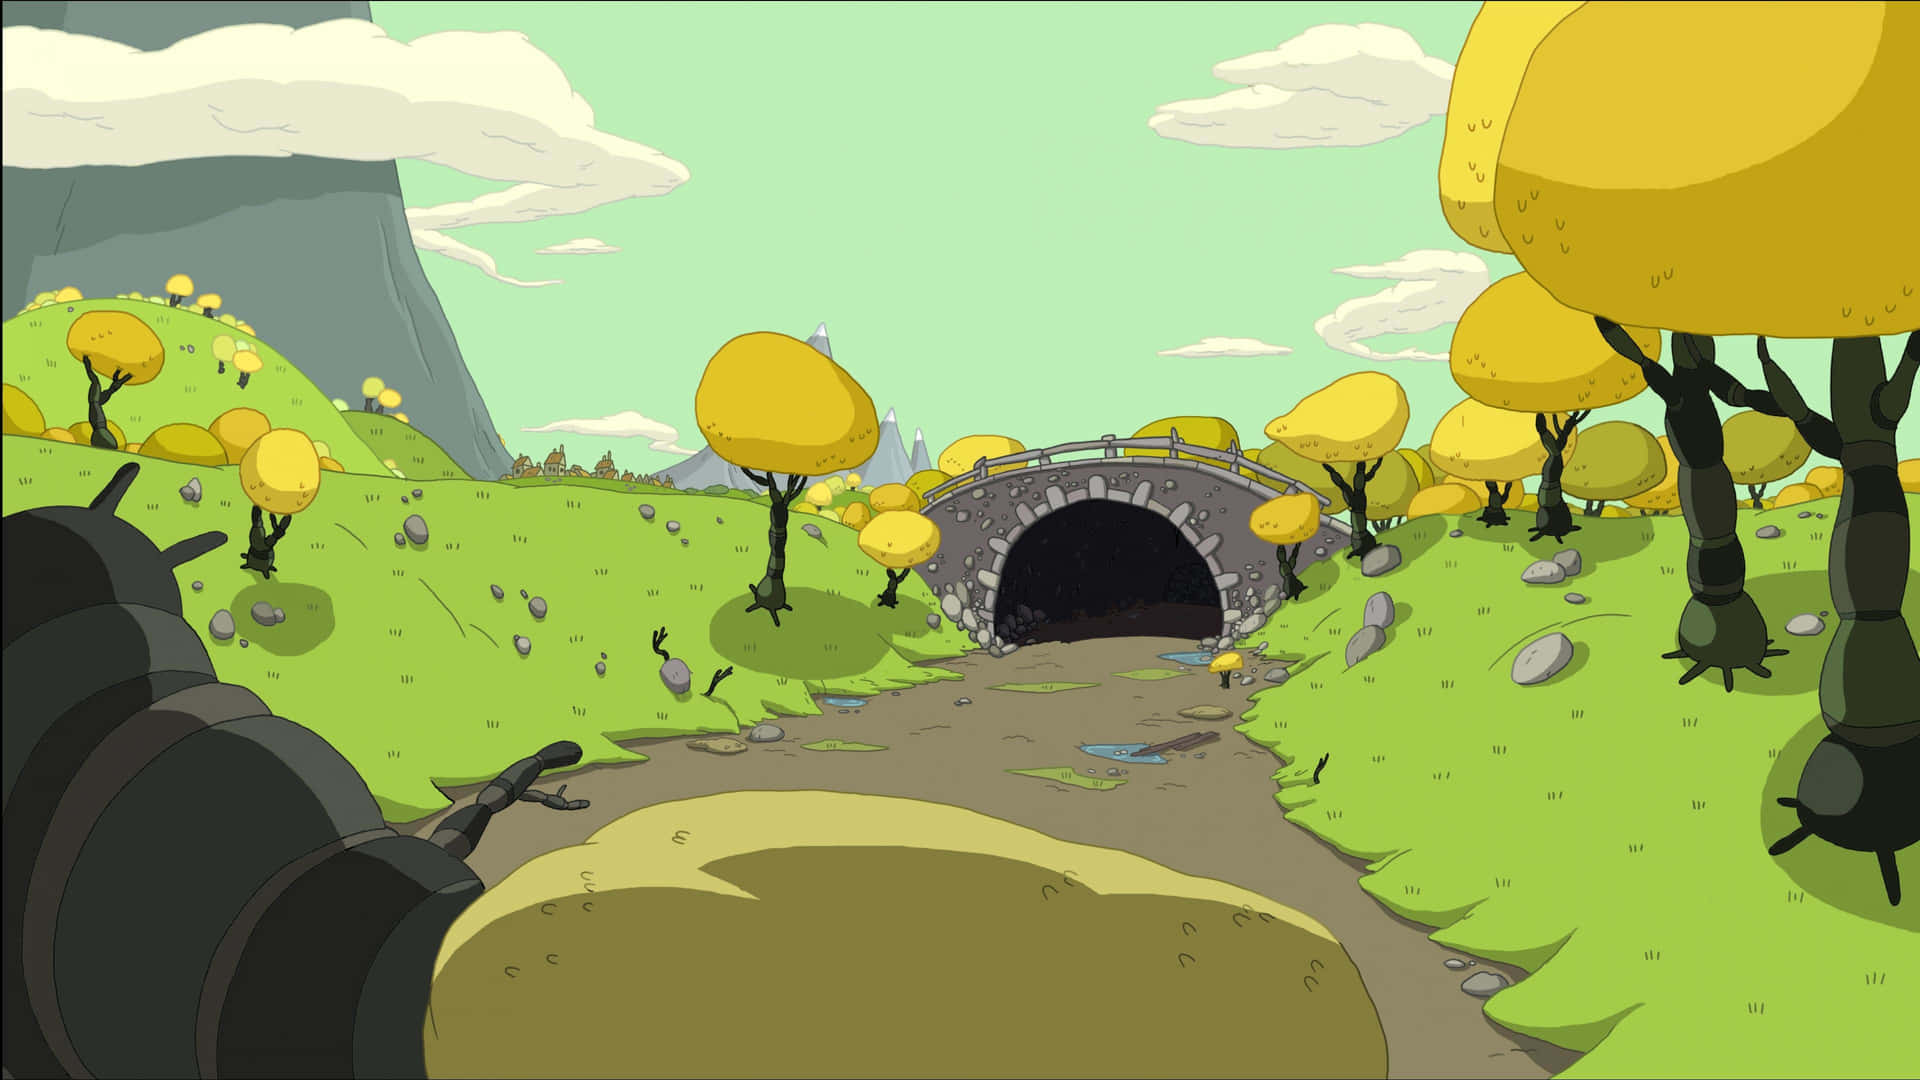 Einbuntes Abenteuer Erwartet In Der Landschaft Von Adventure Time. Wallpaper